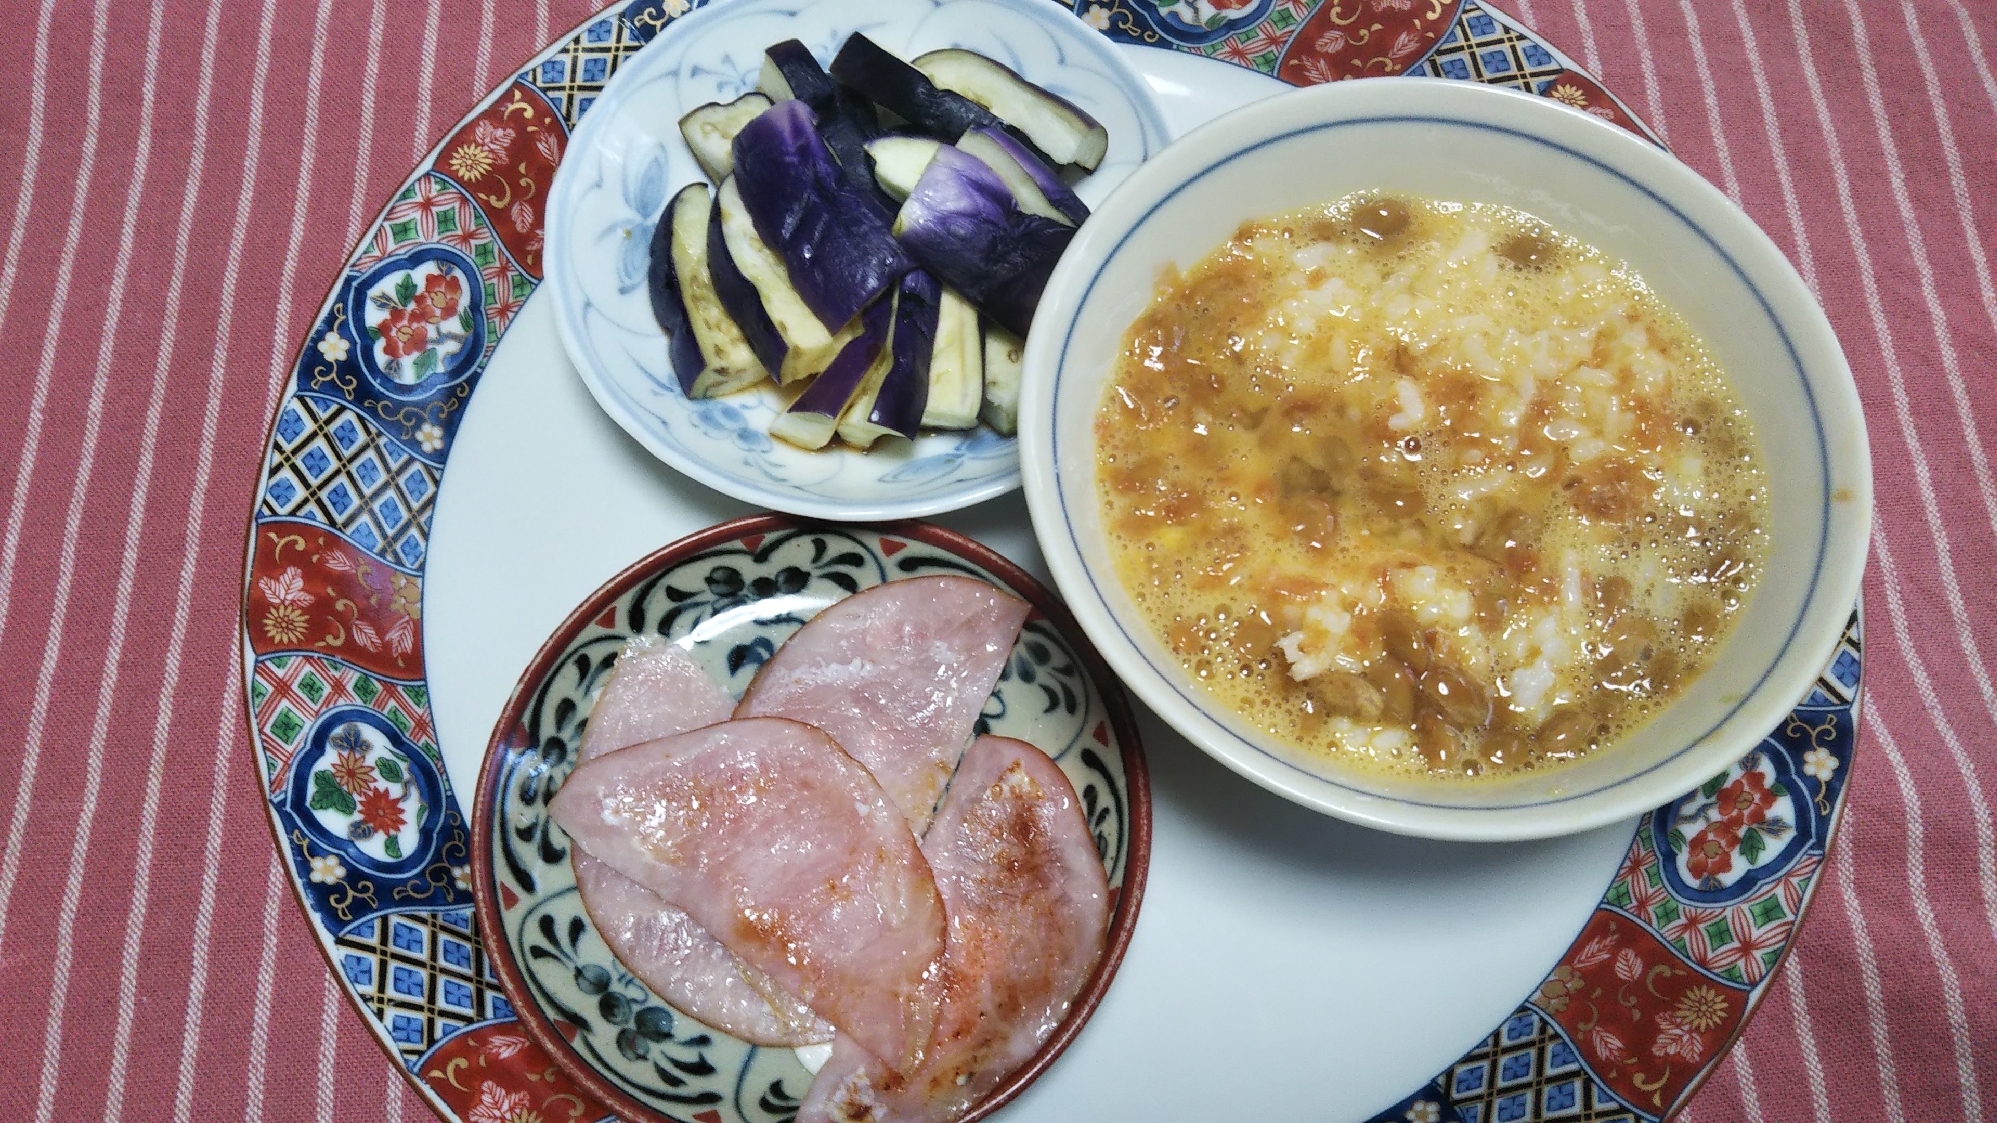 茄子のお浸しとハムソテーと納豆卵鰹節混ぜご飯☆